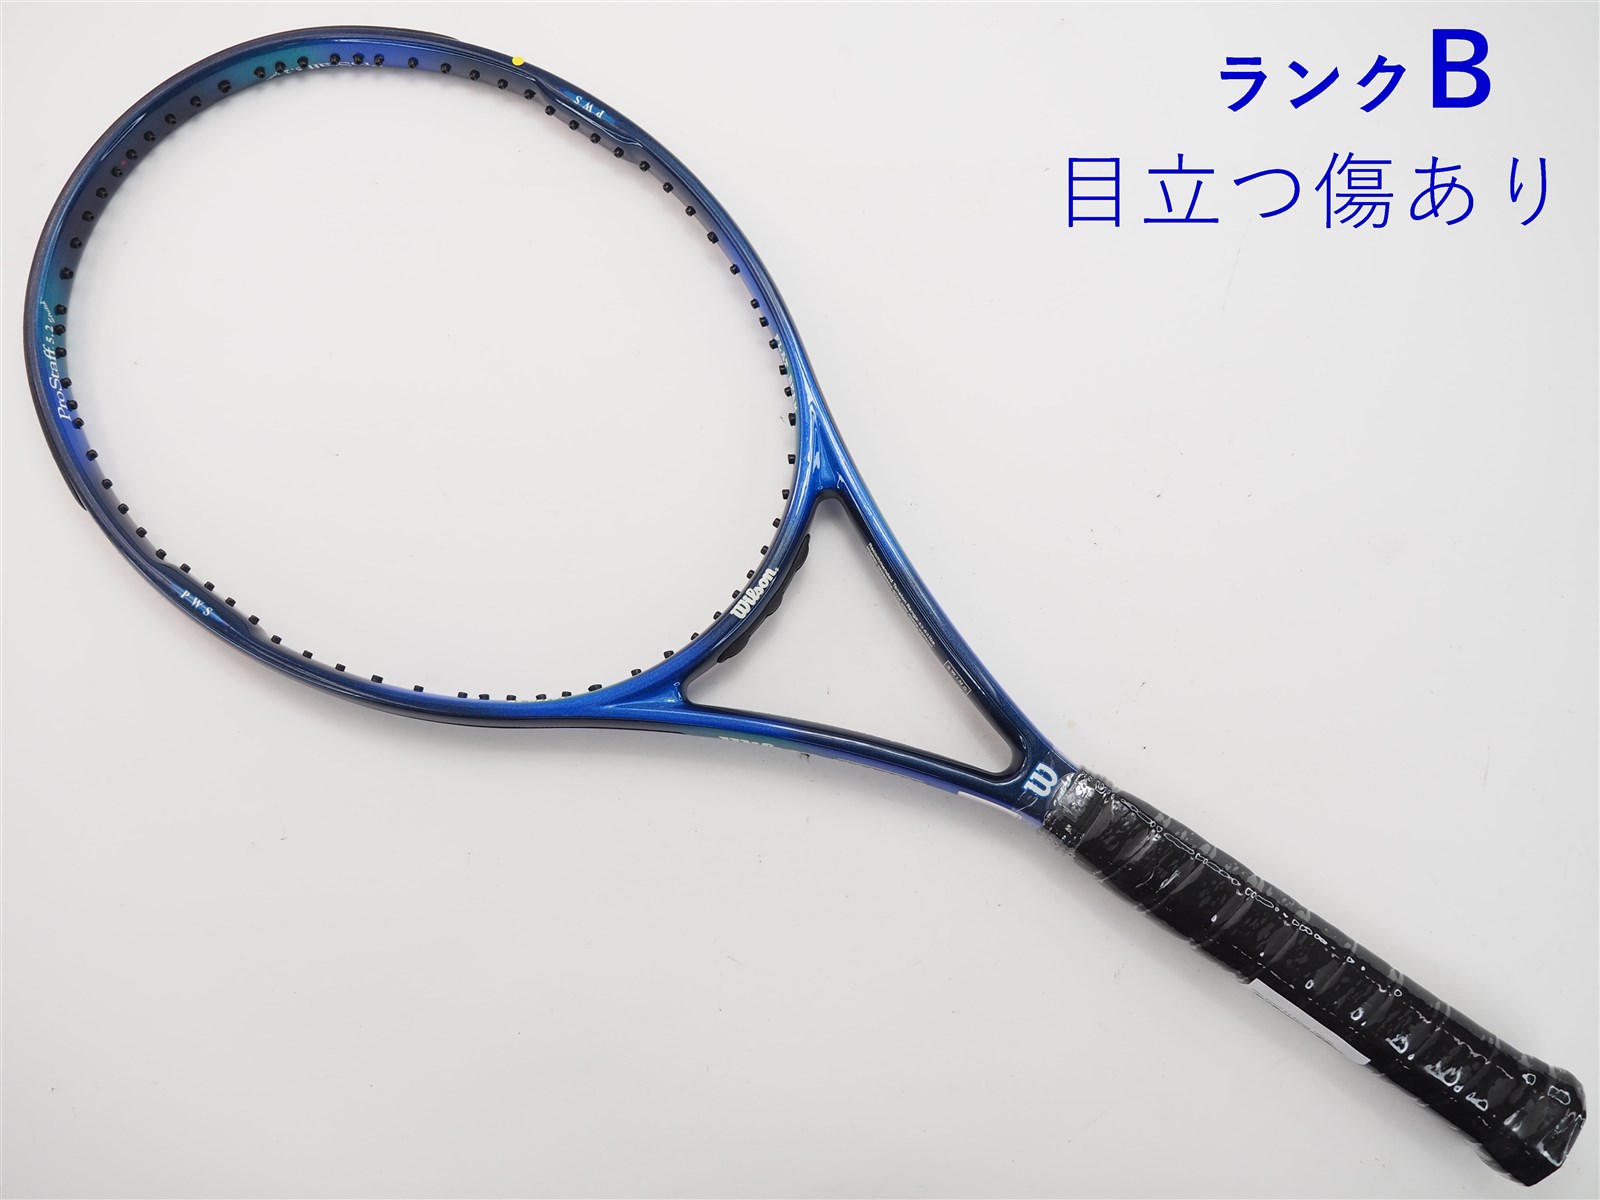 付属品本体のみですバボラ 硬式テニスラケット アエロ プロ ドライブ 2007年モデル G3